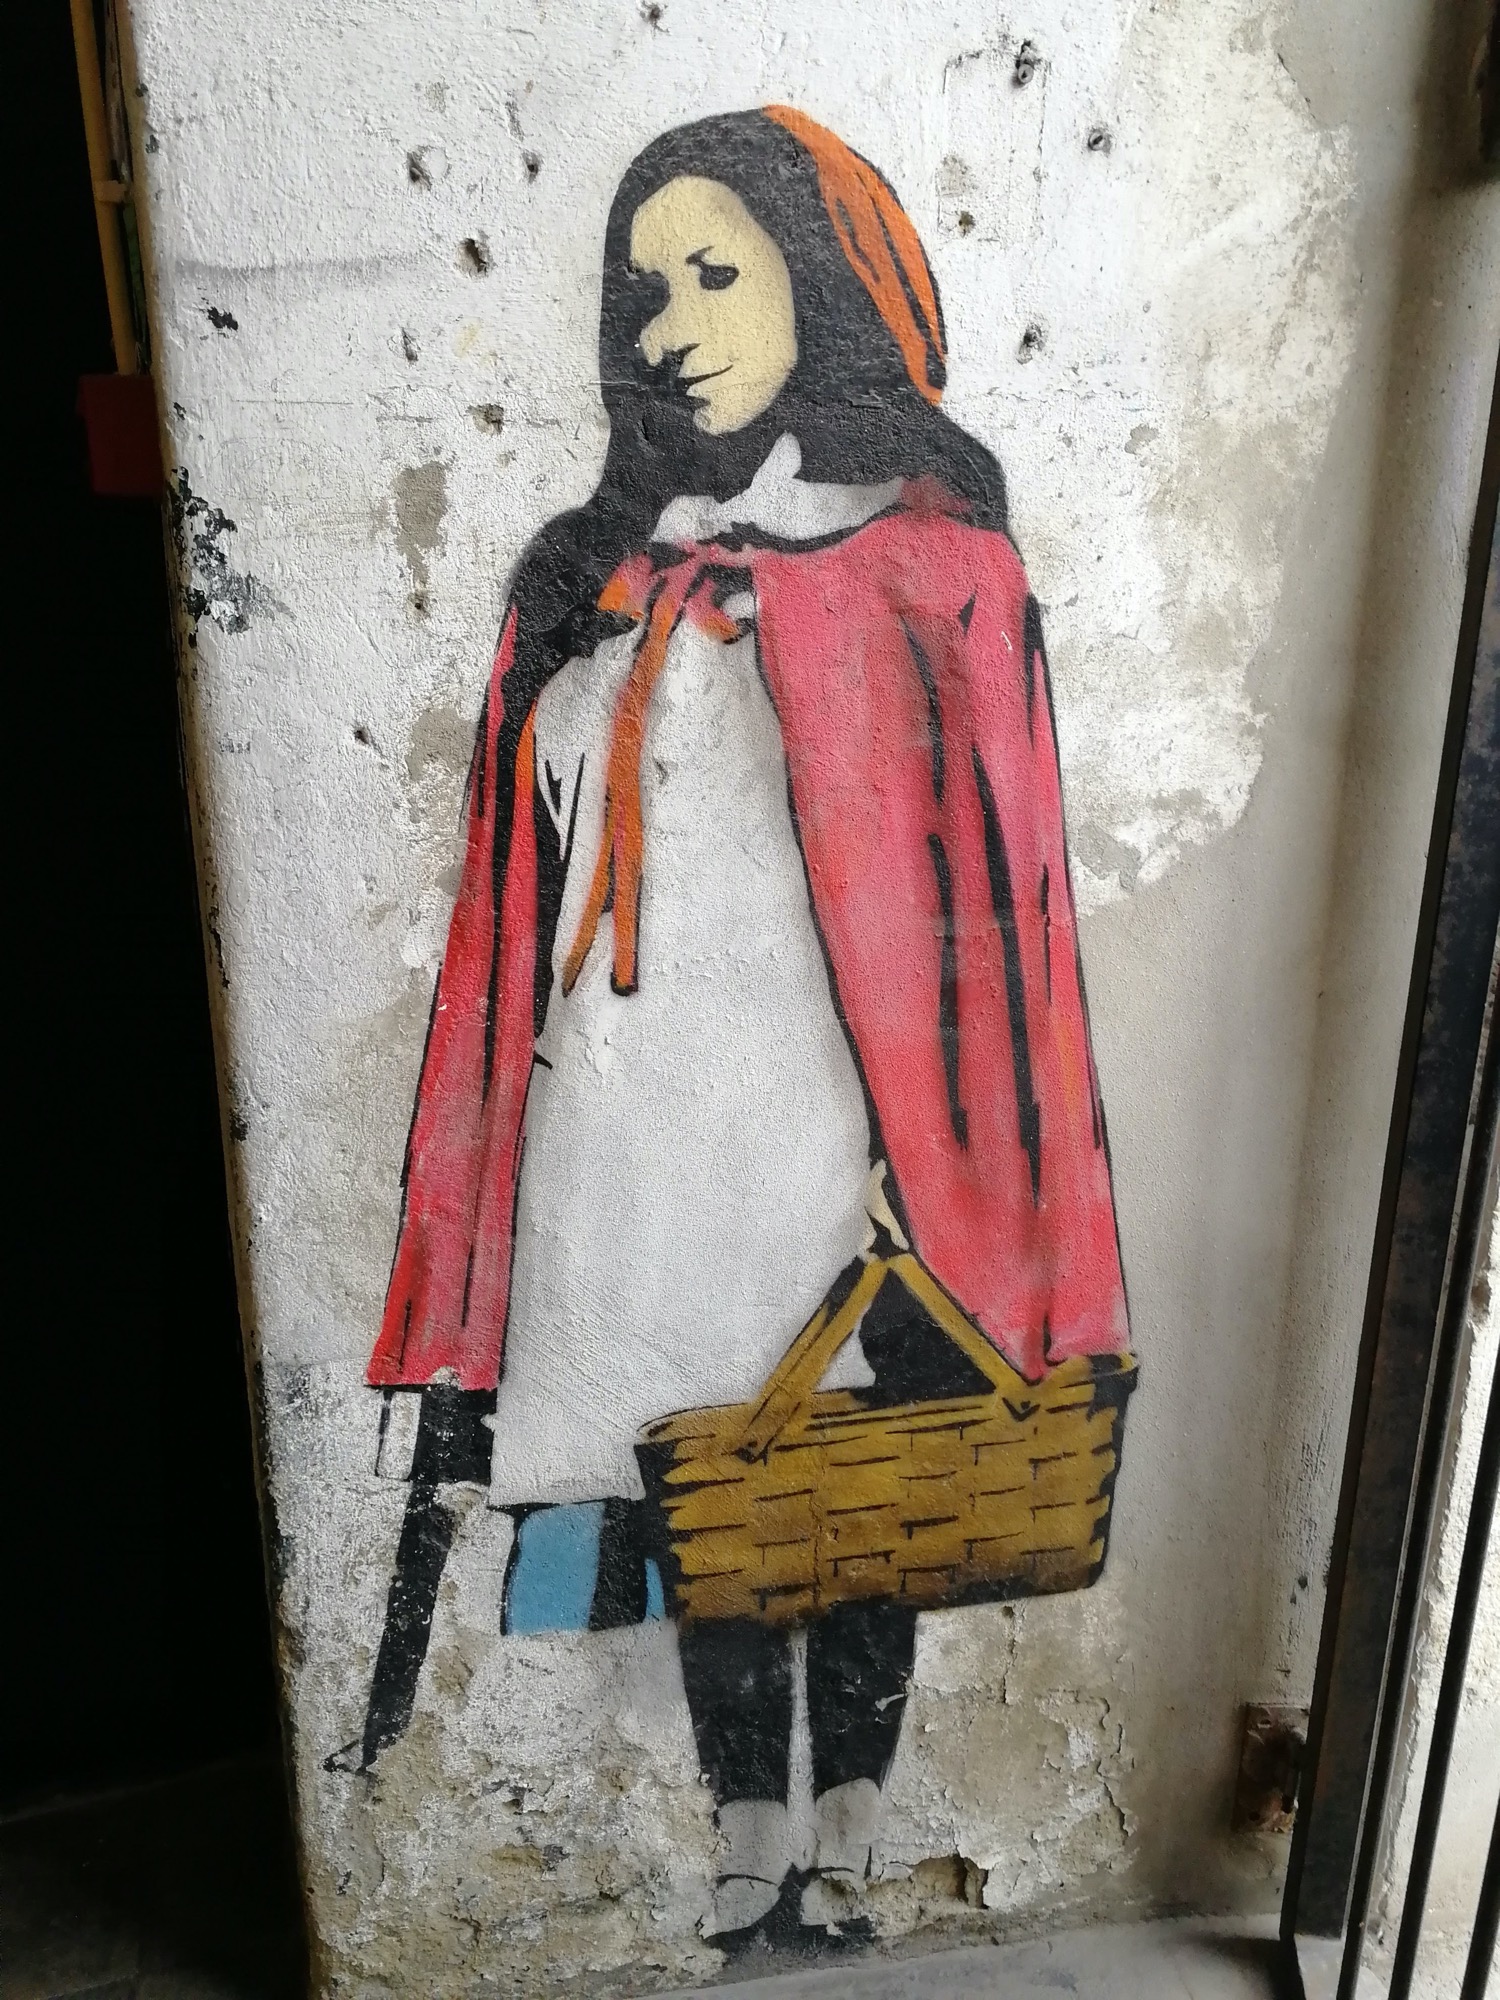 Graffiti 984 Little Red Riding Hood capturé par Rabot à Lisboa Portugal